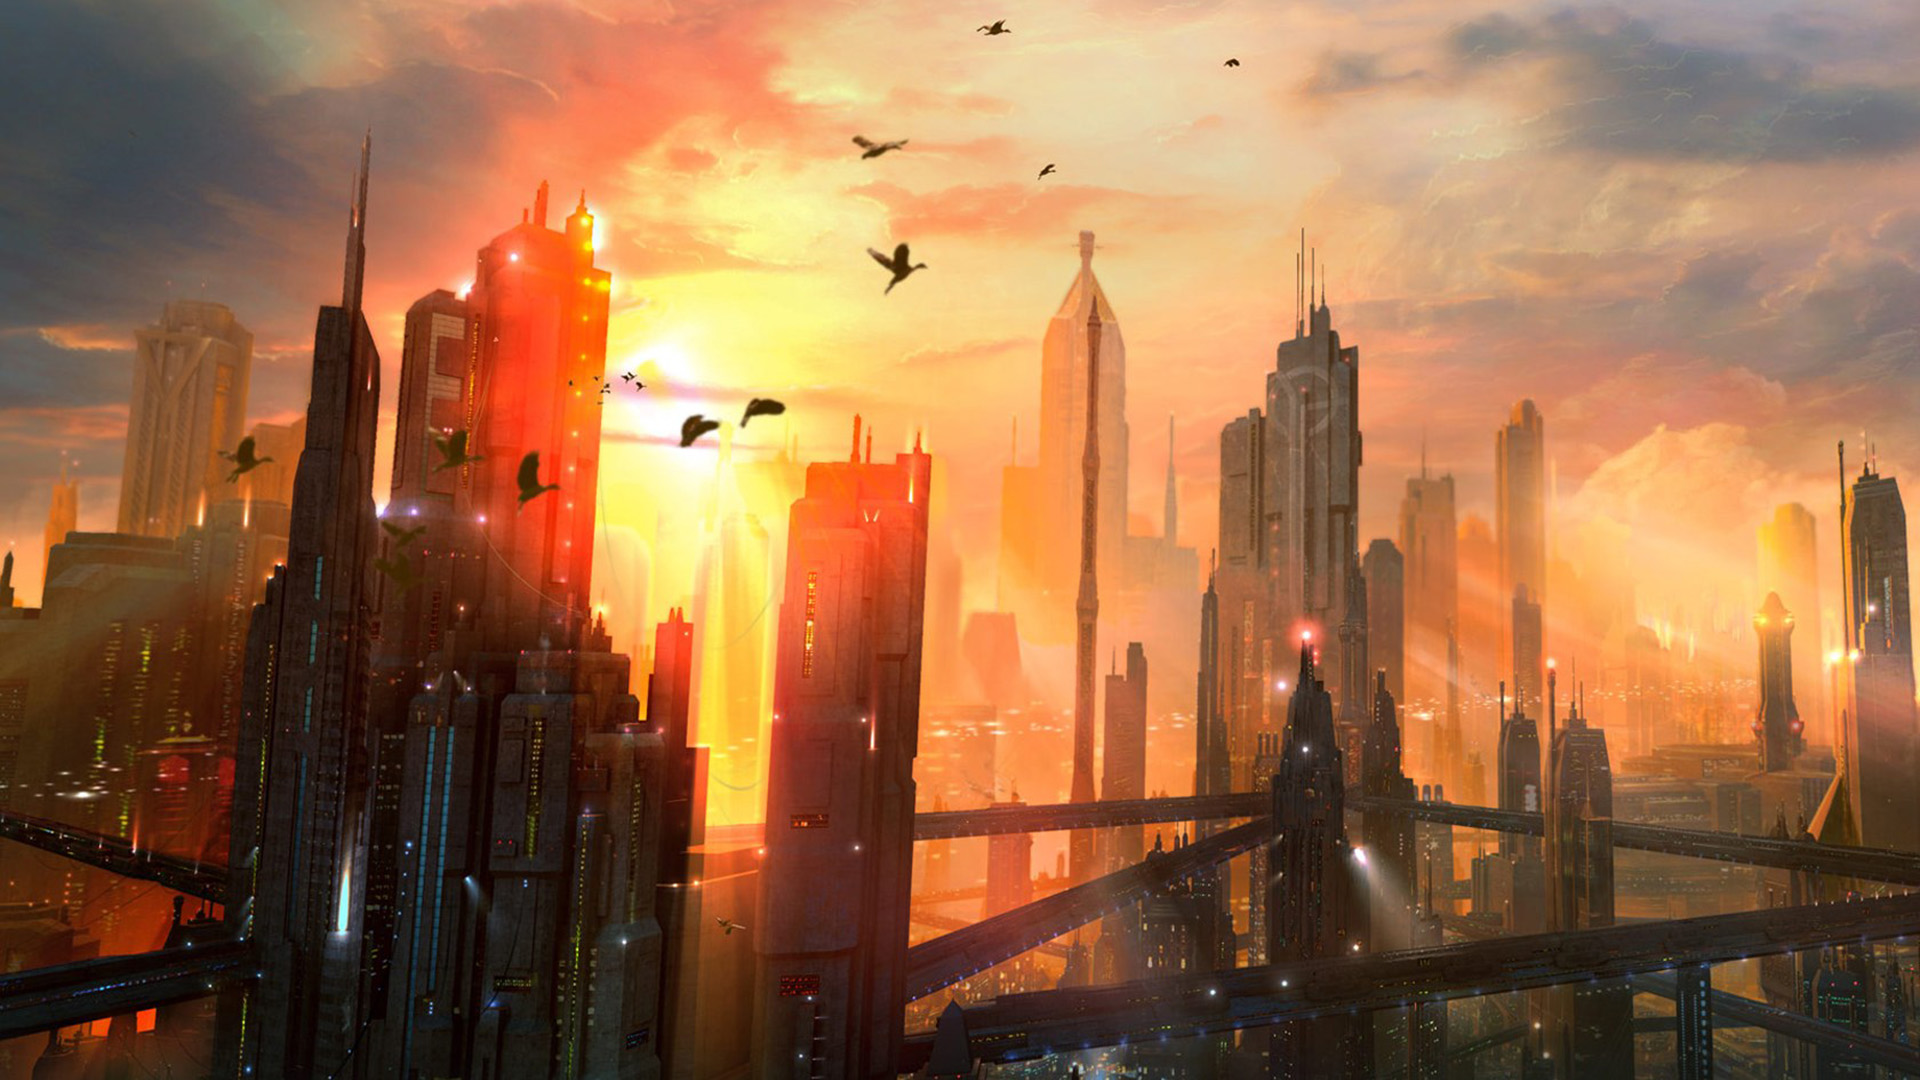 Download mobile wallpaper City, Skyscraper, Building, Sci Fi for free.